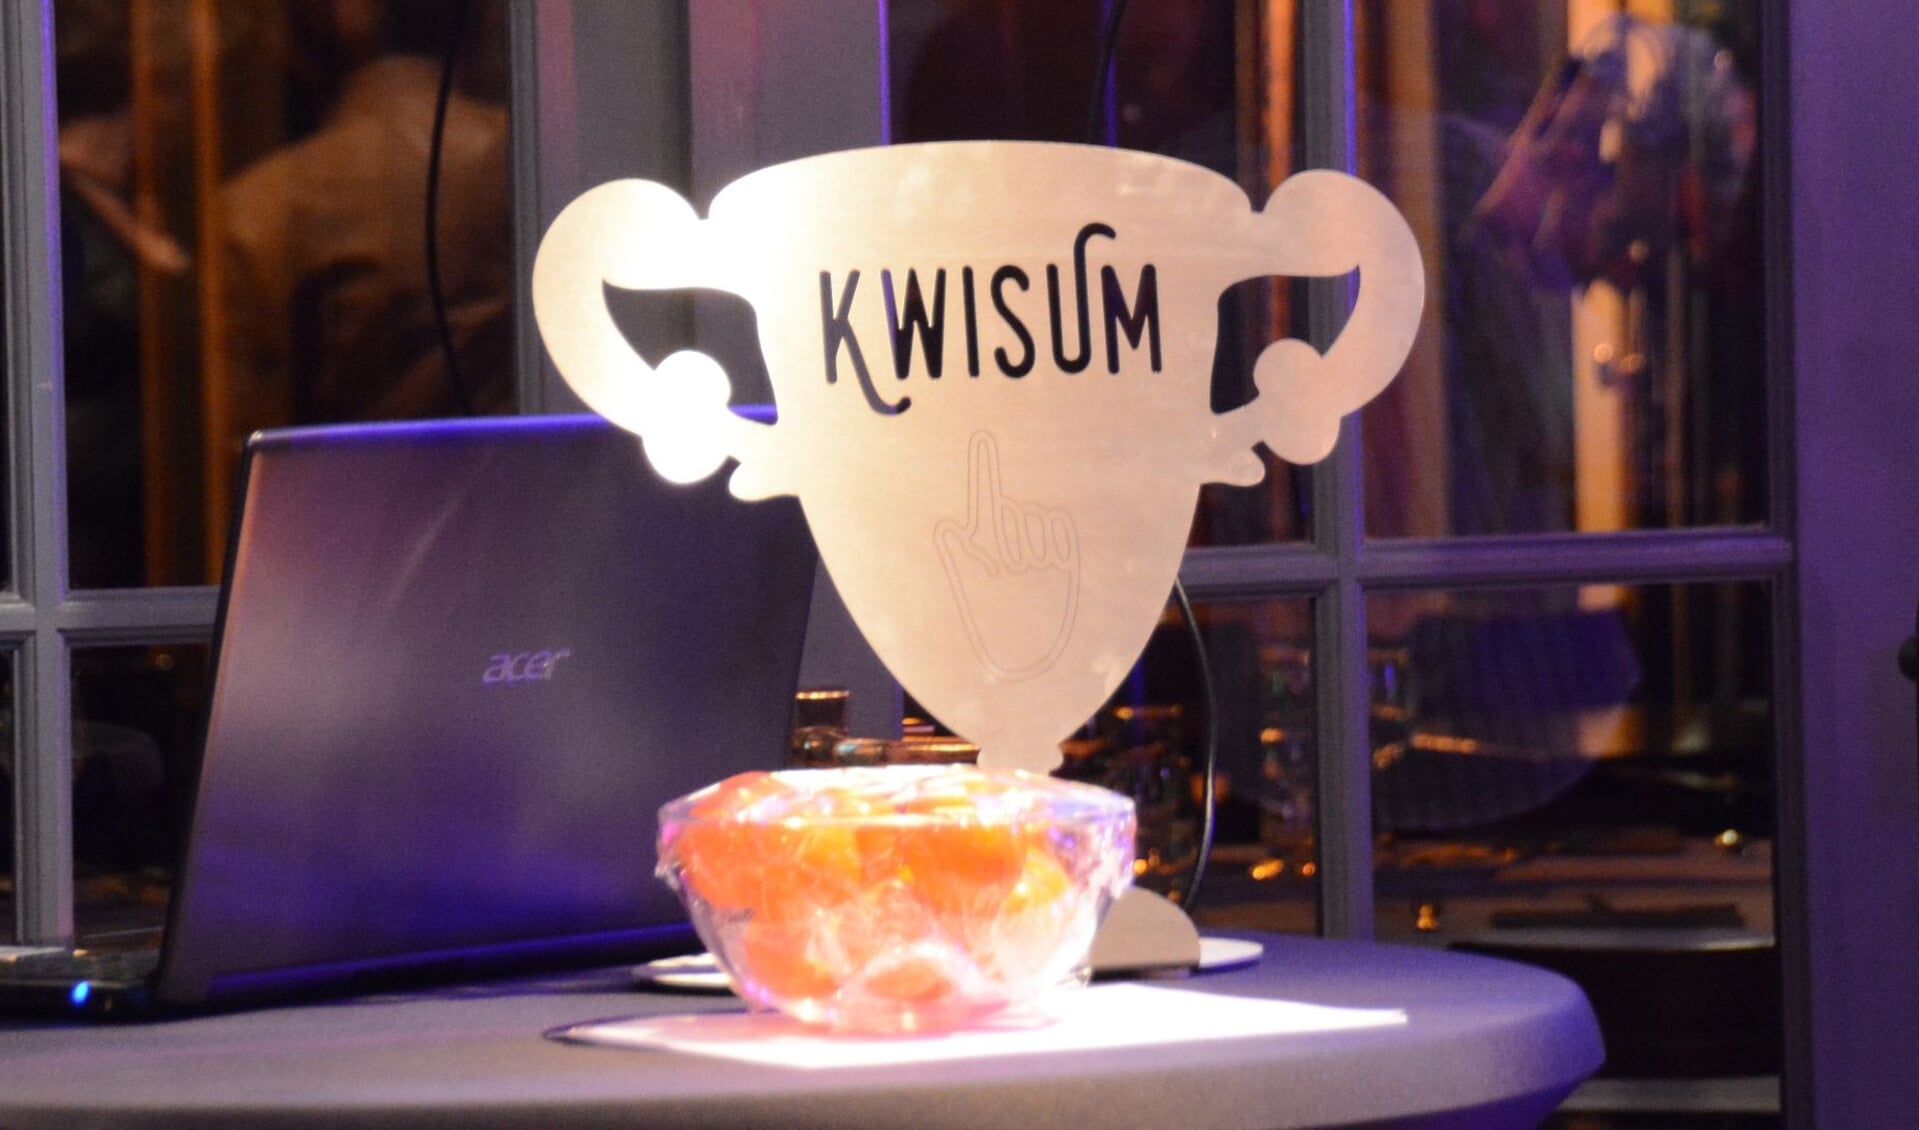 De Kwisum-trofee gaat de ijskast in. Of de quiz in een andere hoedanigheid terugkeert is nog niet bekend. (Foto: Nannie van Hoof)